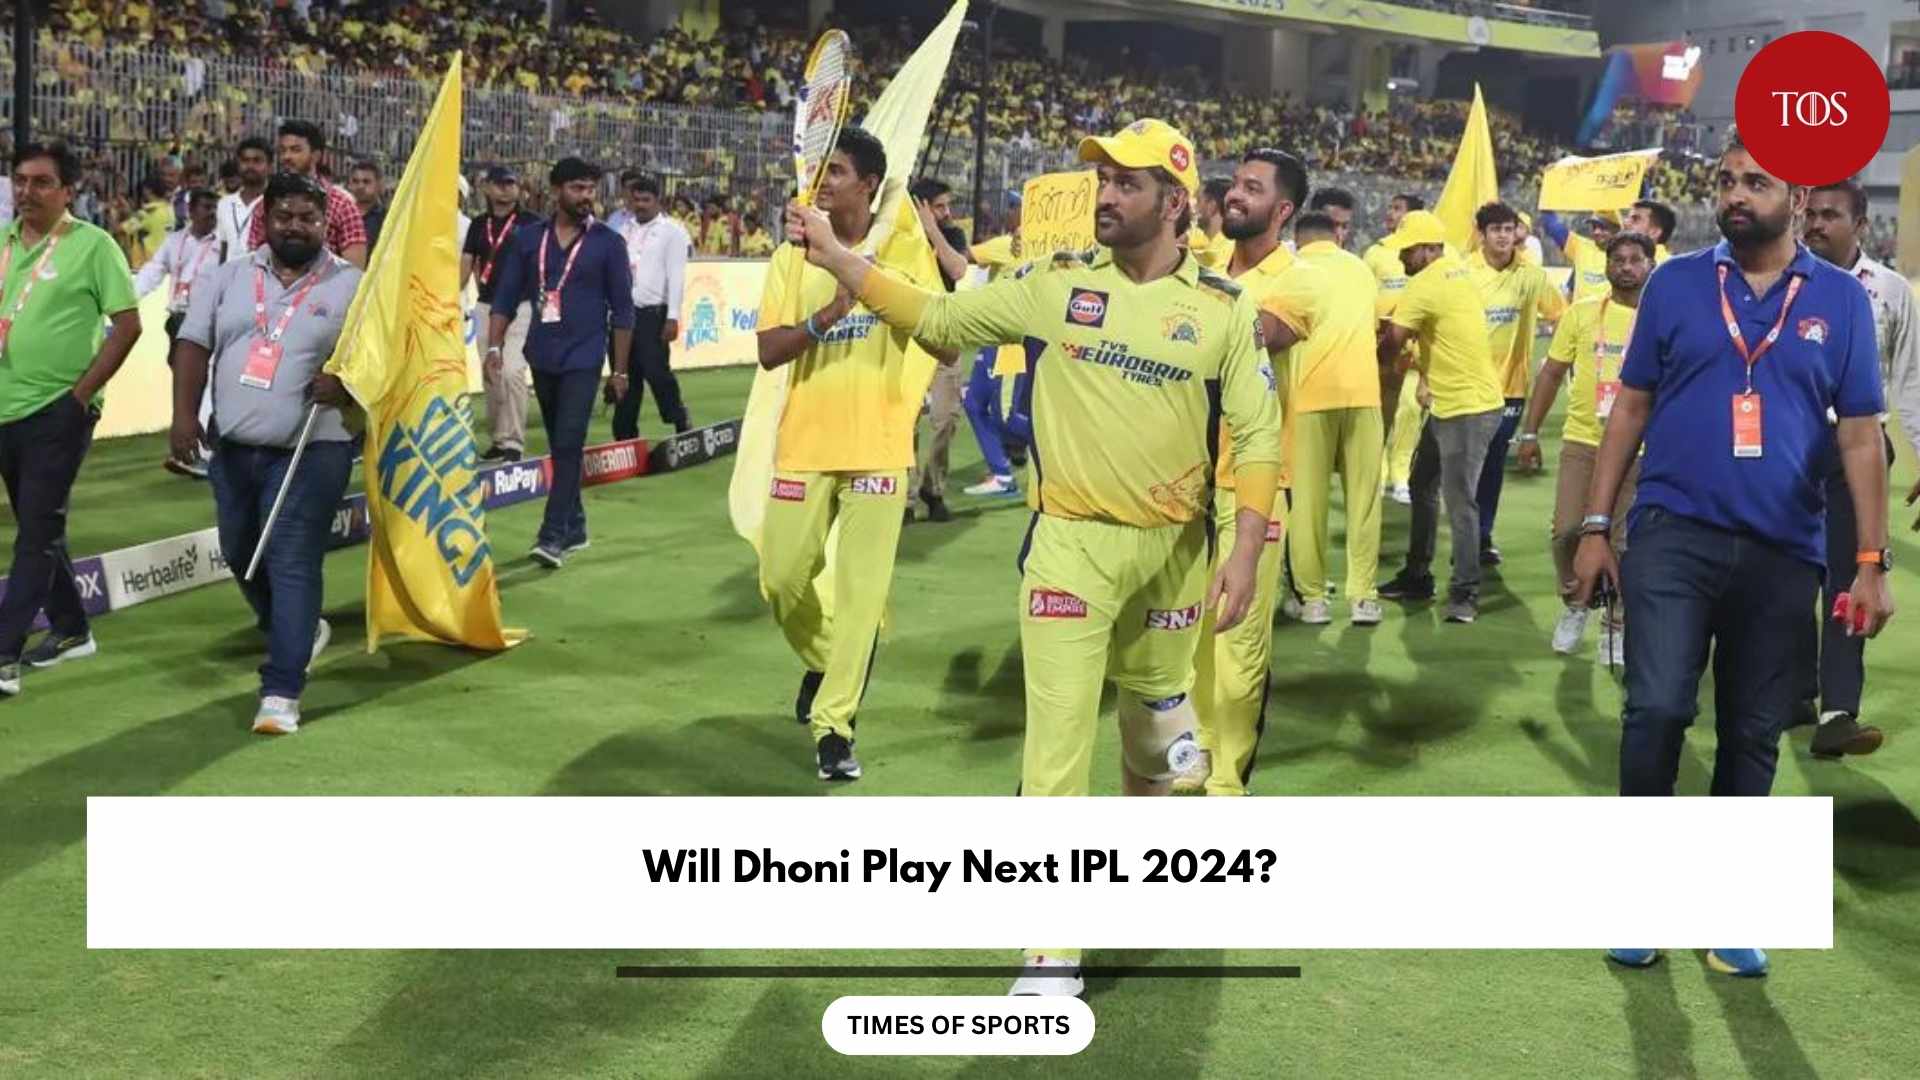 Will Dhoni Play Next IPL 2024